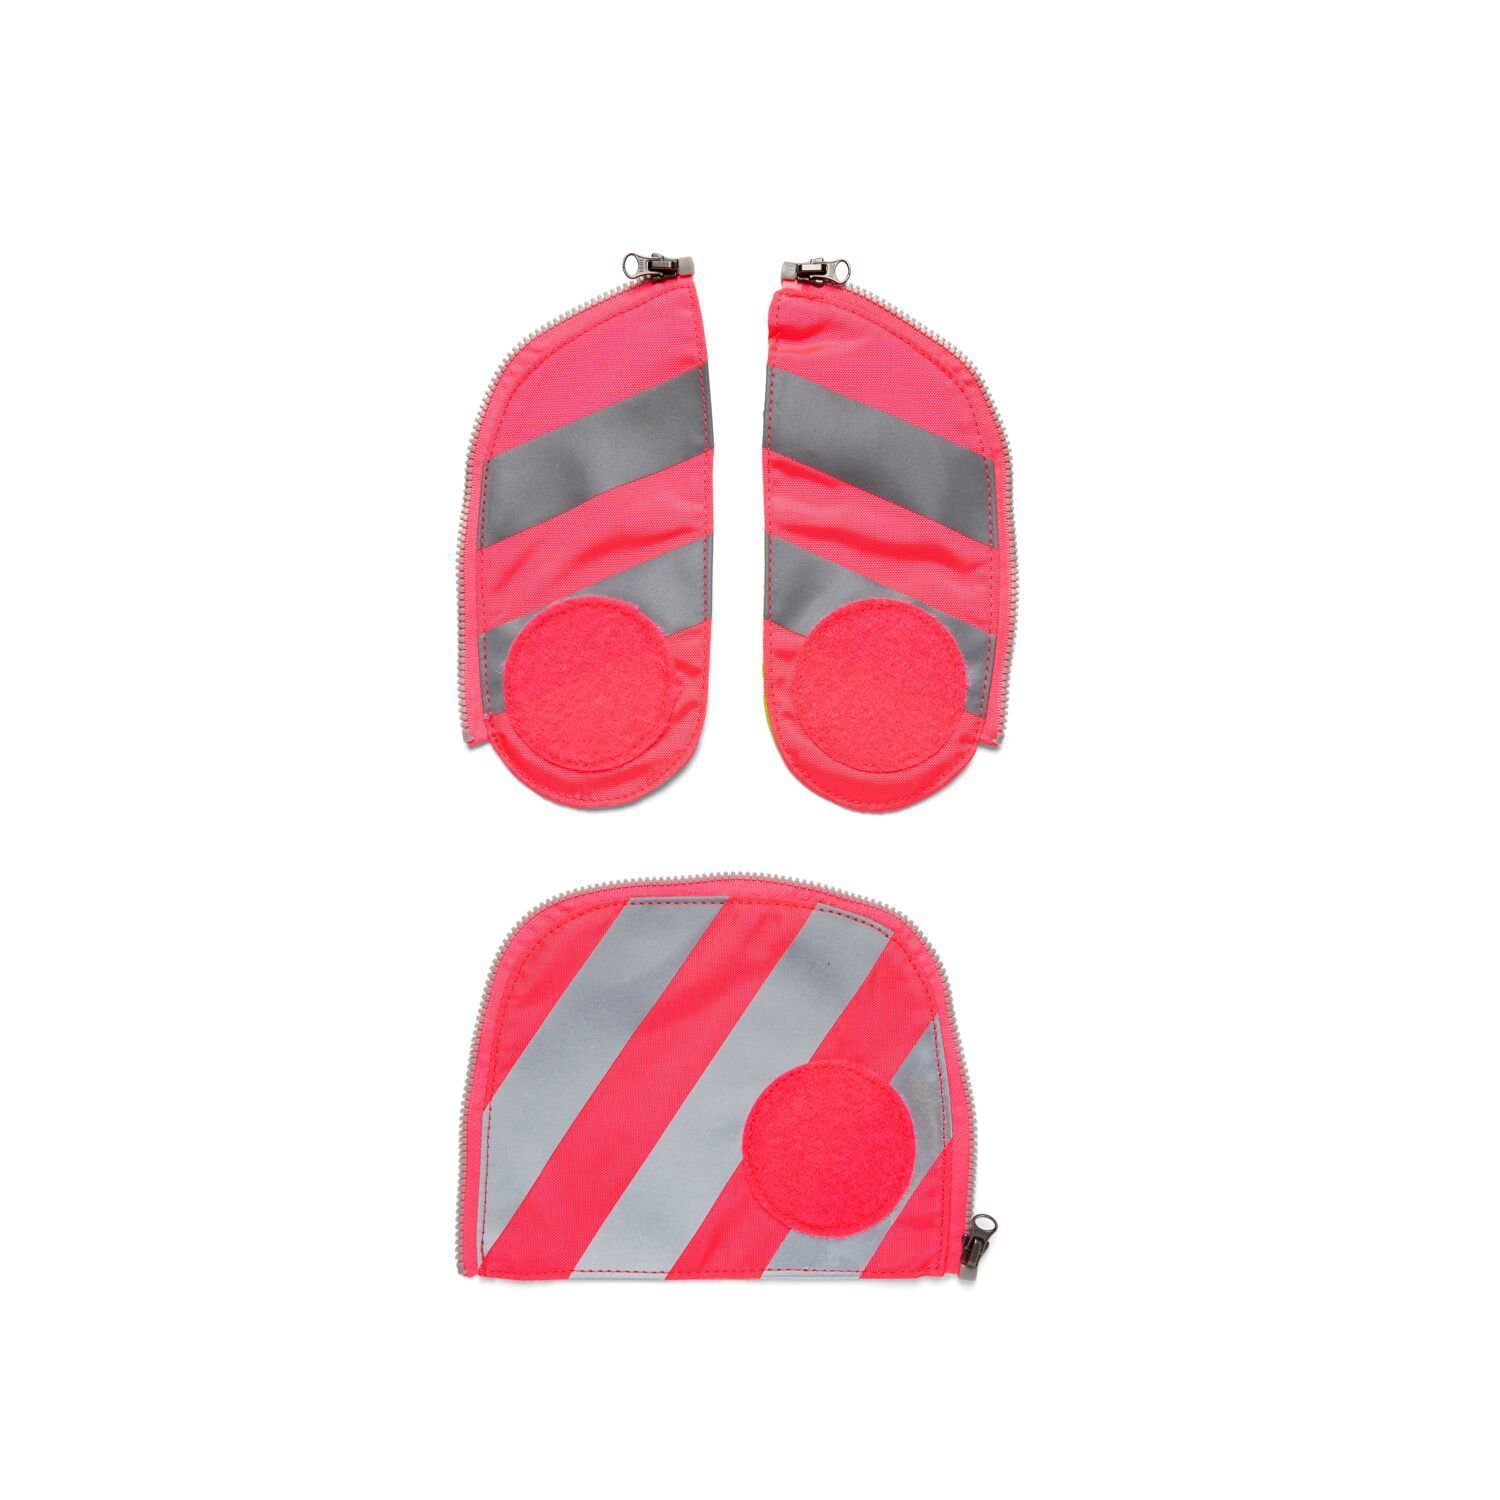 Zip-Set ergobag Pink Stoff, Sicherheits-Set mit Schulranzen Reflektorstreifen 002-511 Sichtbarkeit Pink Fluo (3-teilig), fluoreszierender